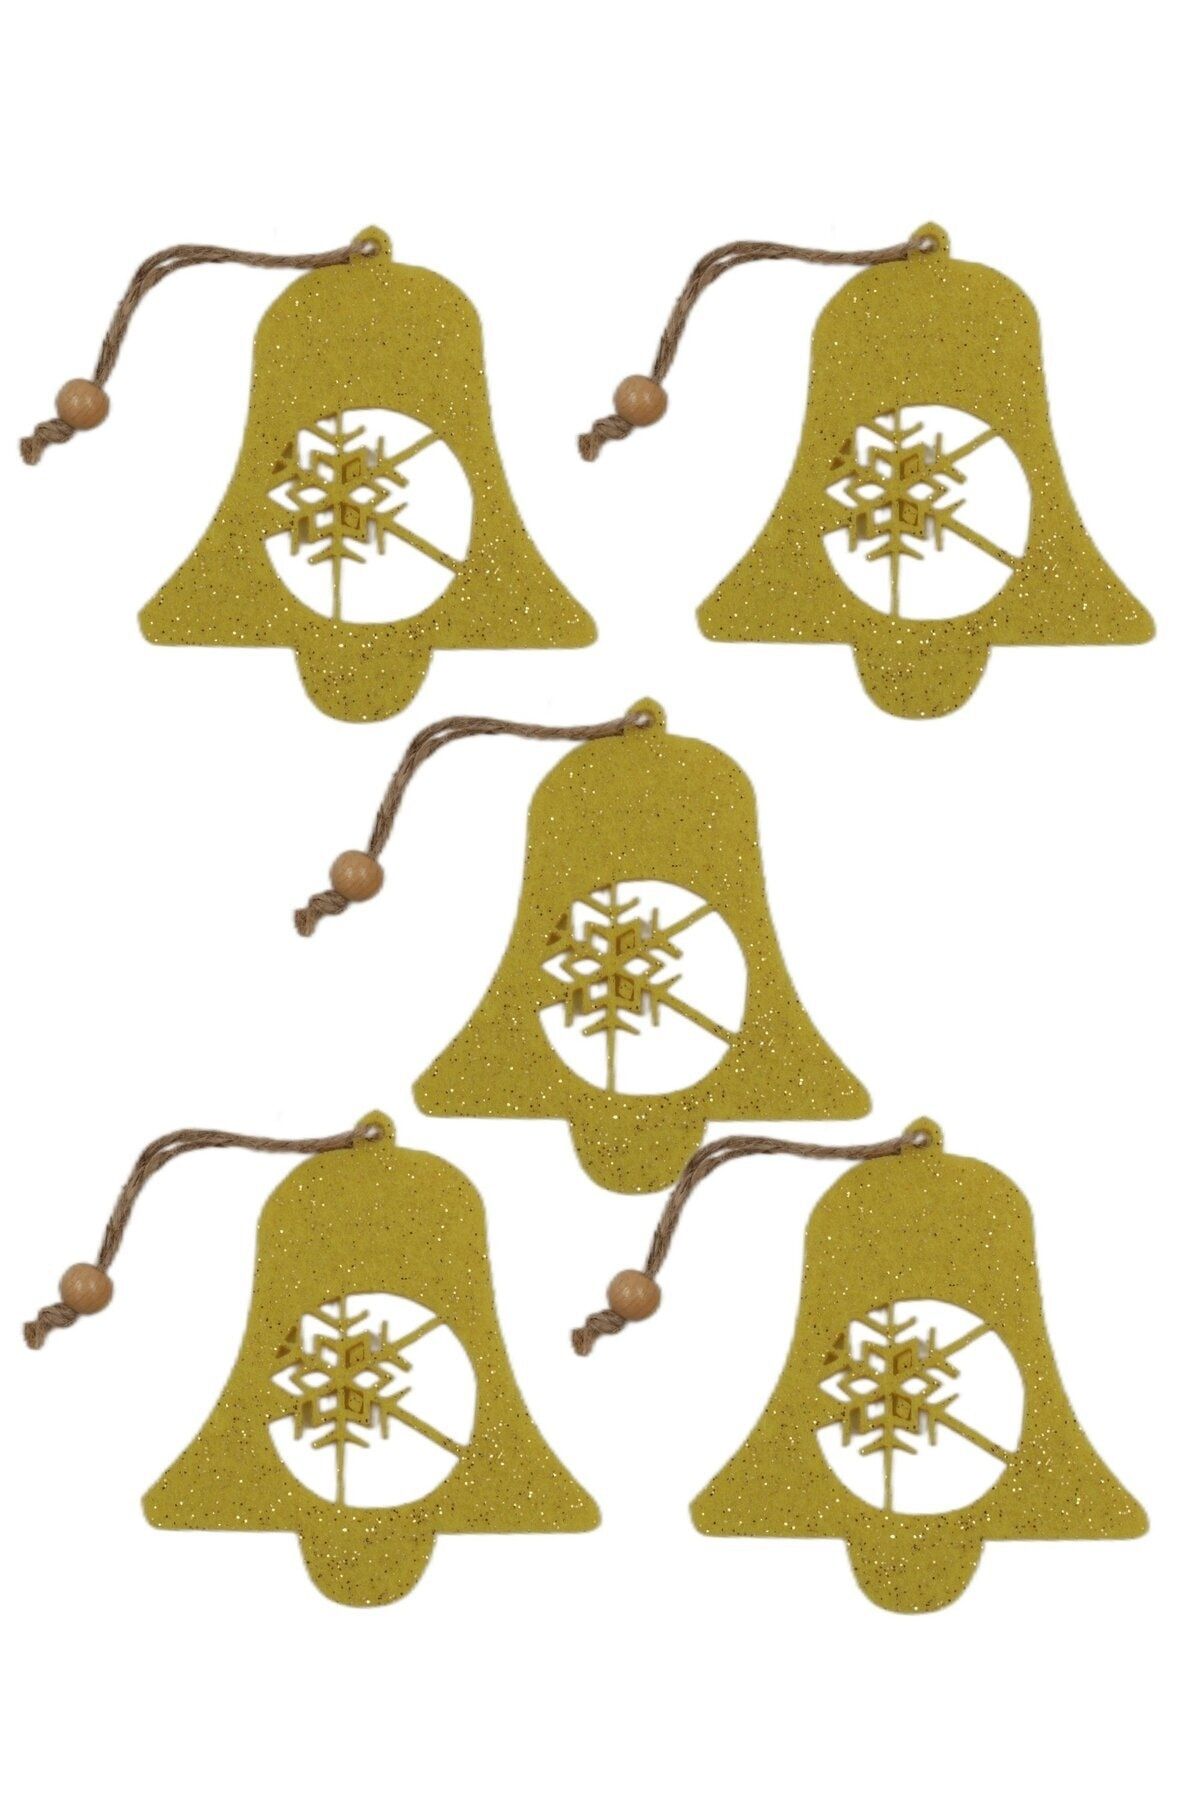 roco paper Yılbaşı Ağacı Süsleme Seti - Simli Keçe Hediye Paketi Süsleme - 5 Adet 9.5x8.5 cm ÇKT001 Sarı Renk